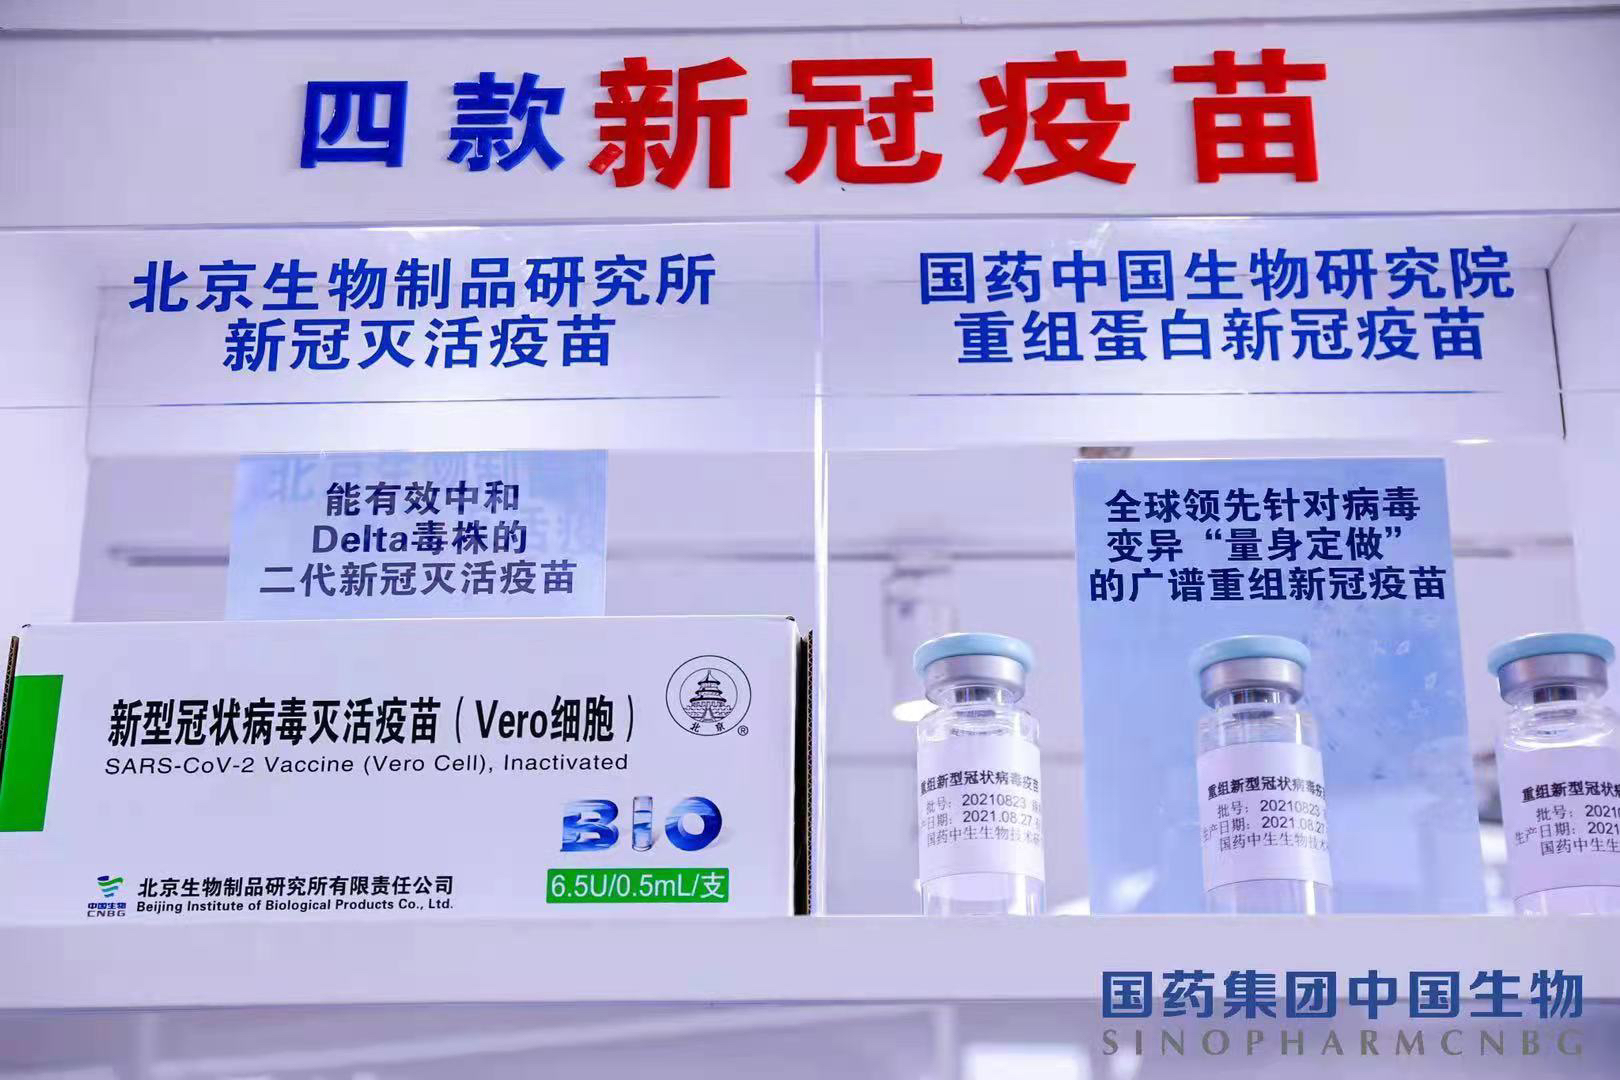 二代疫苗,新冠特效药亮相服贸会,中国生物负责人:新产品有效对抗